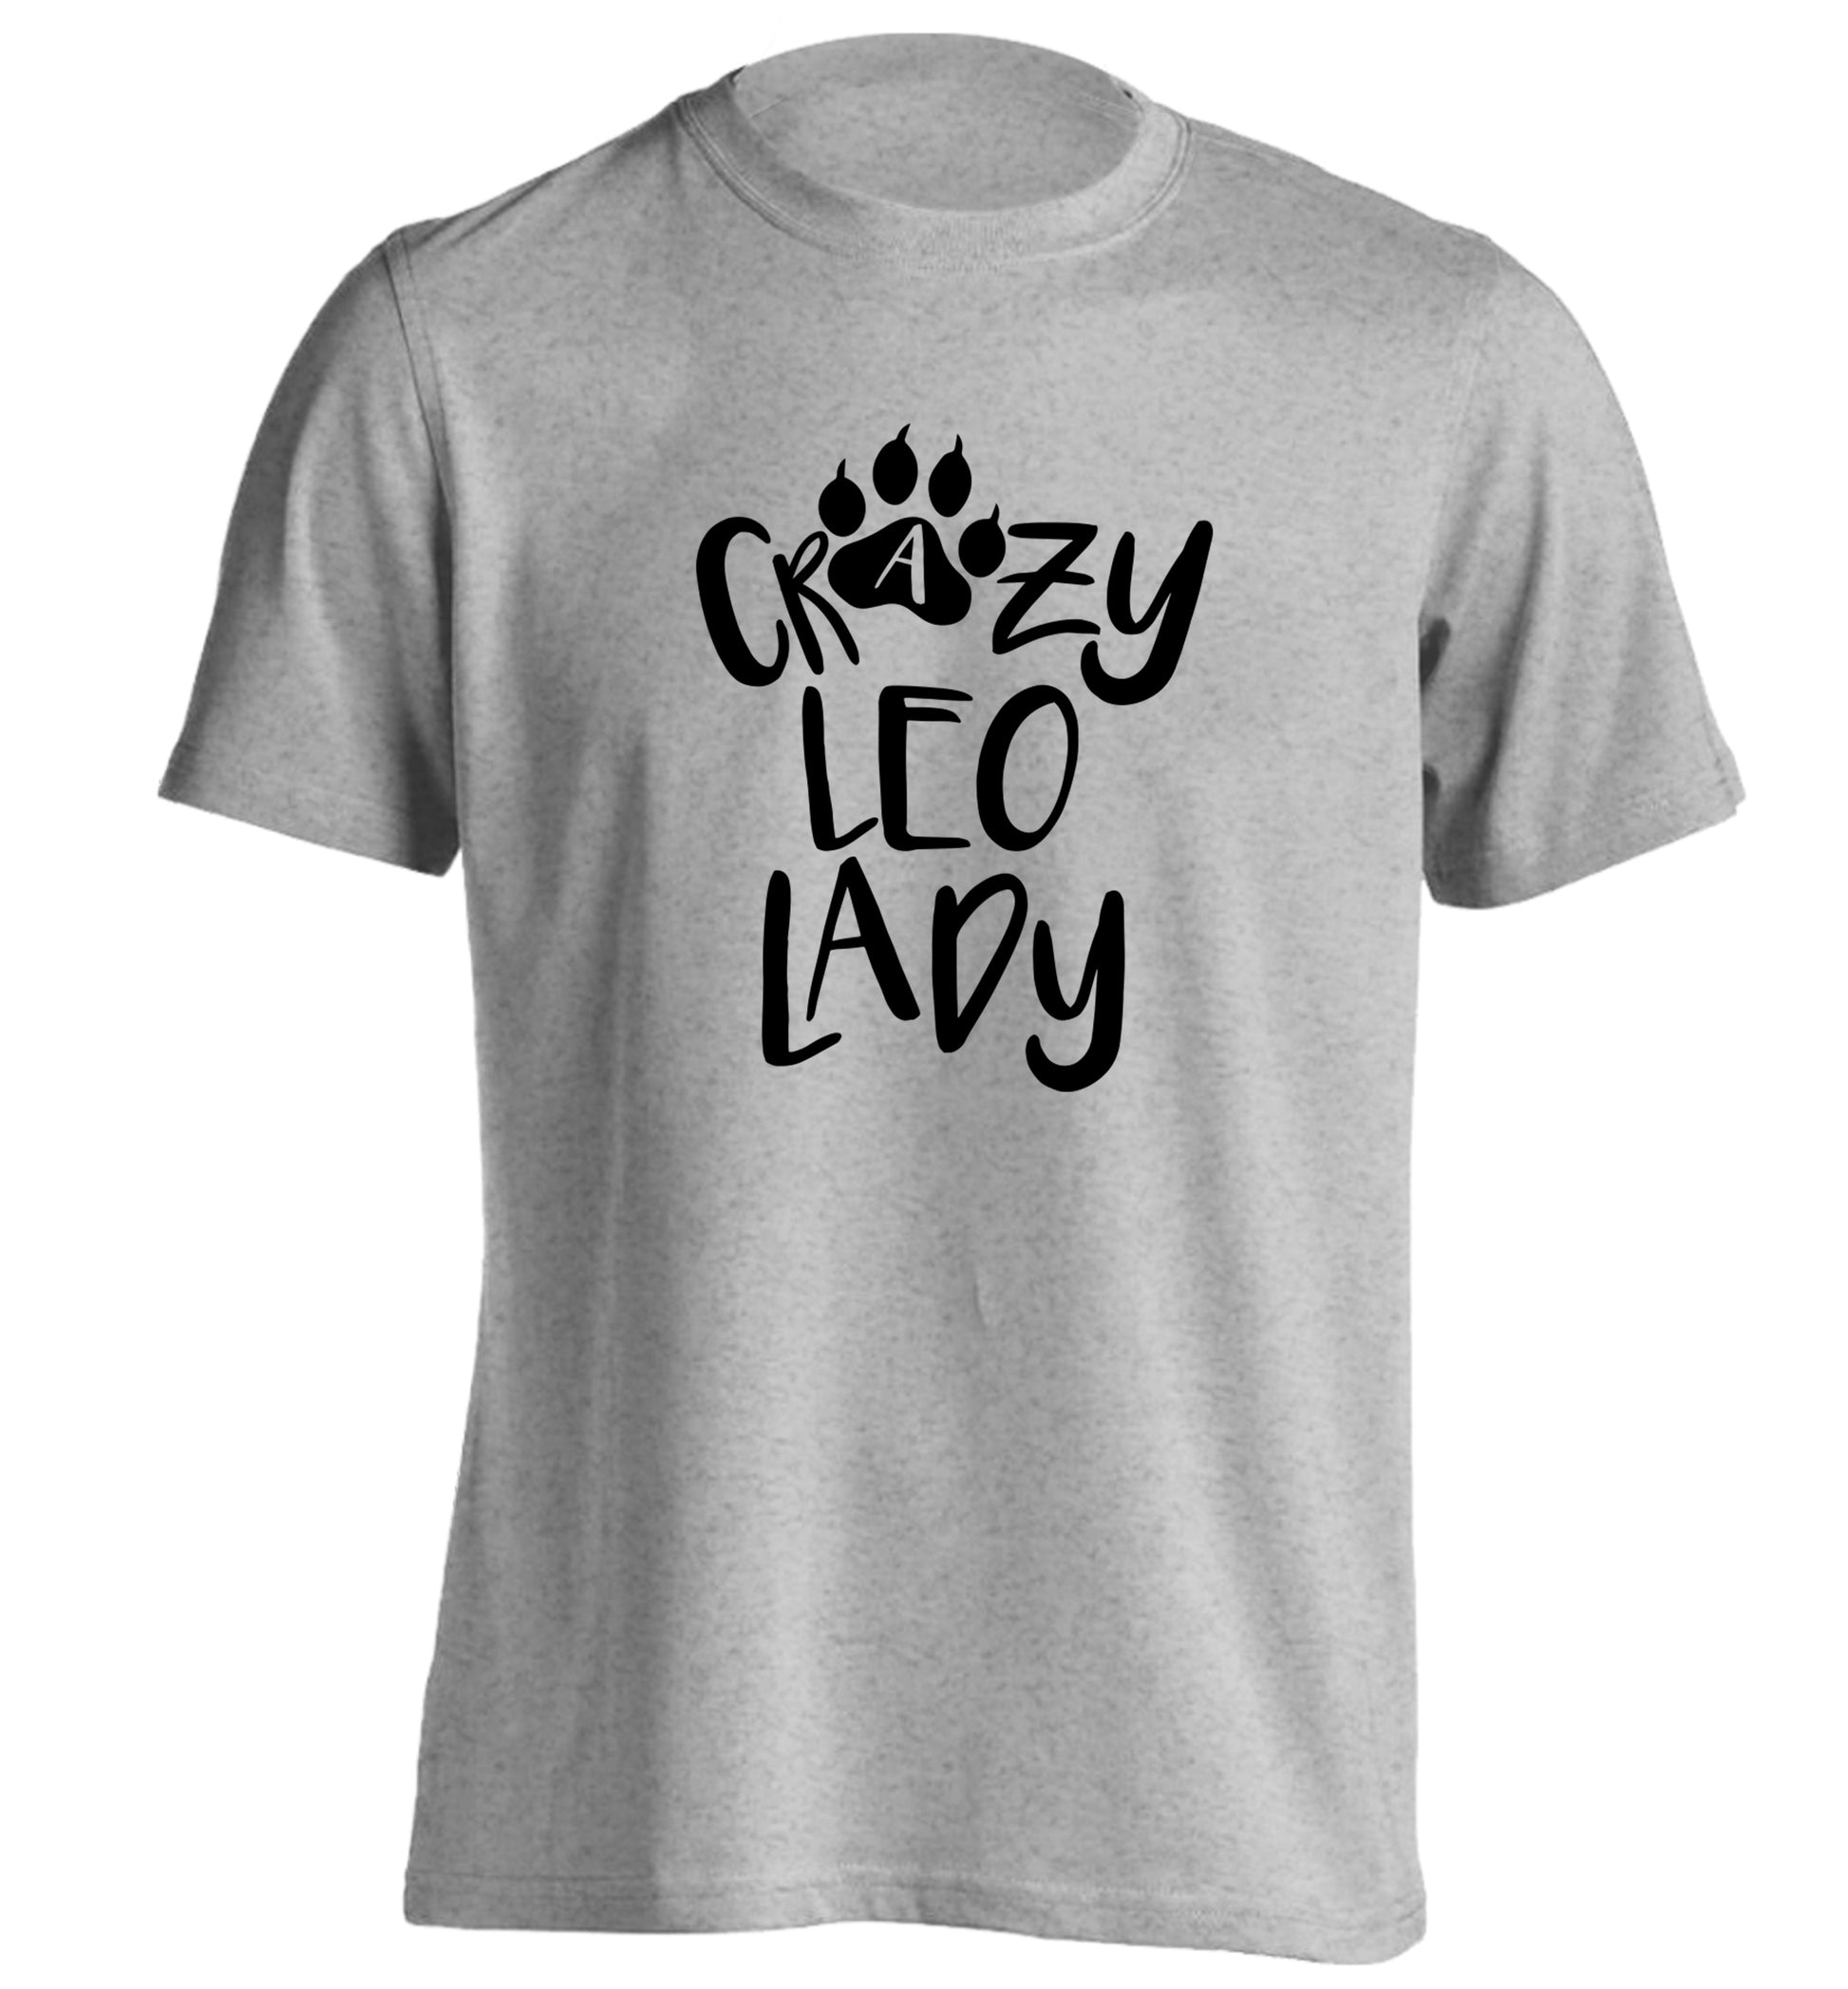 Crazy leo lady adults unisex grey Tshirt 2XL